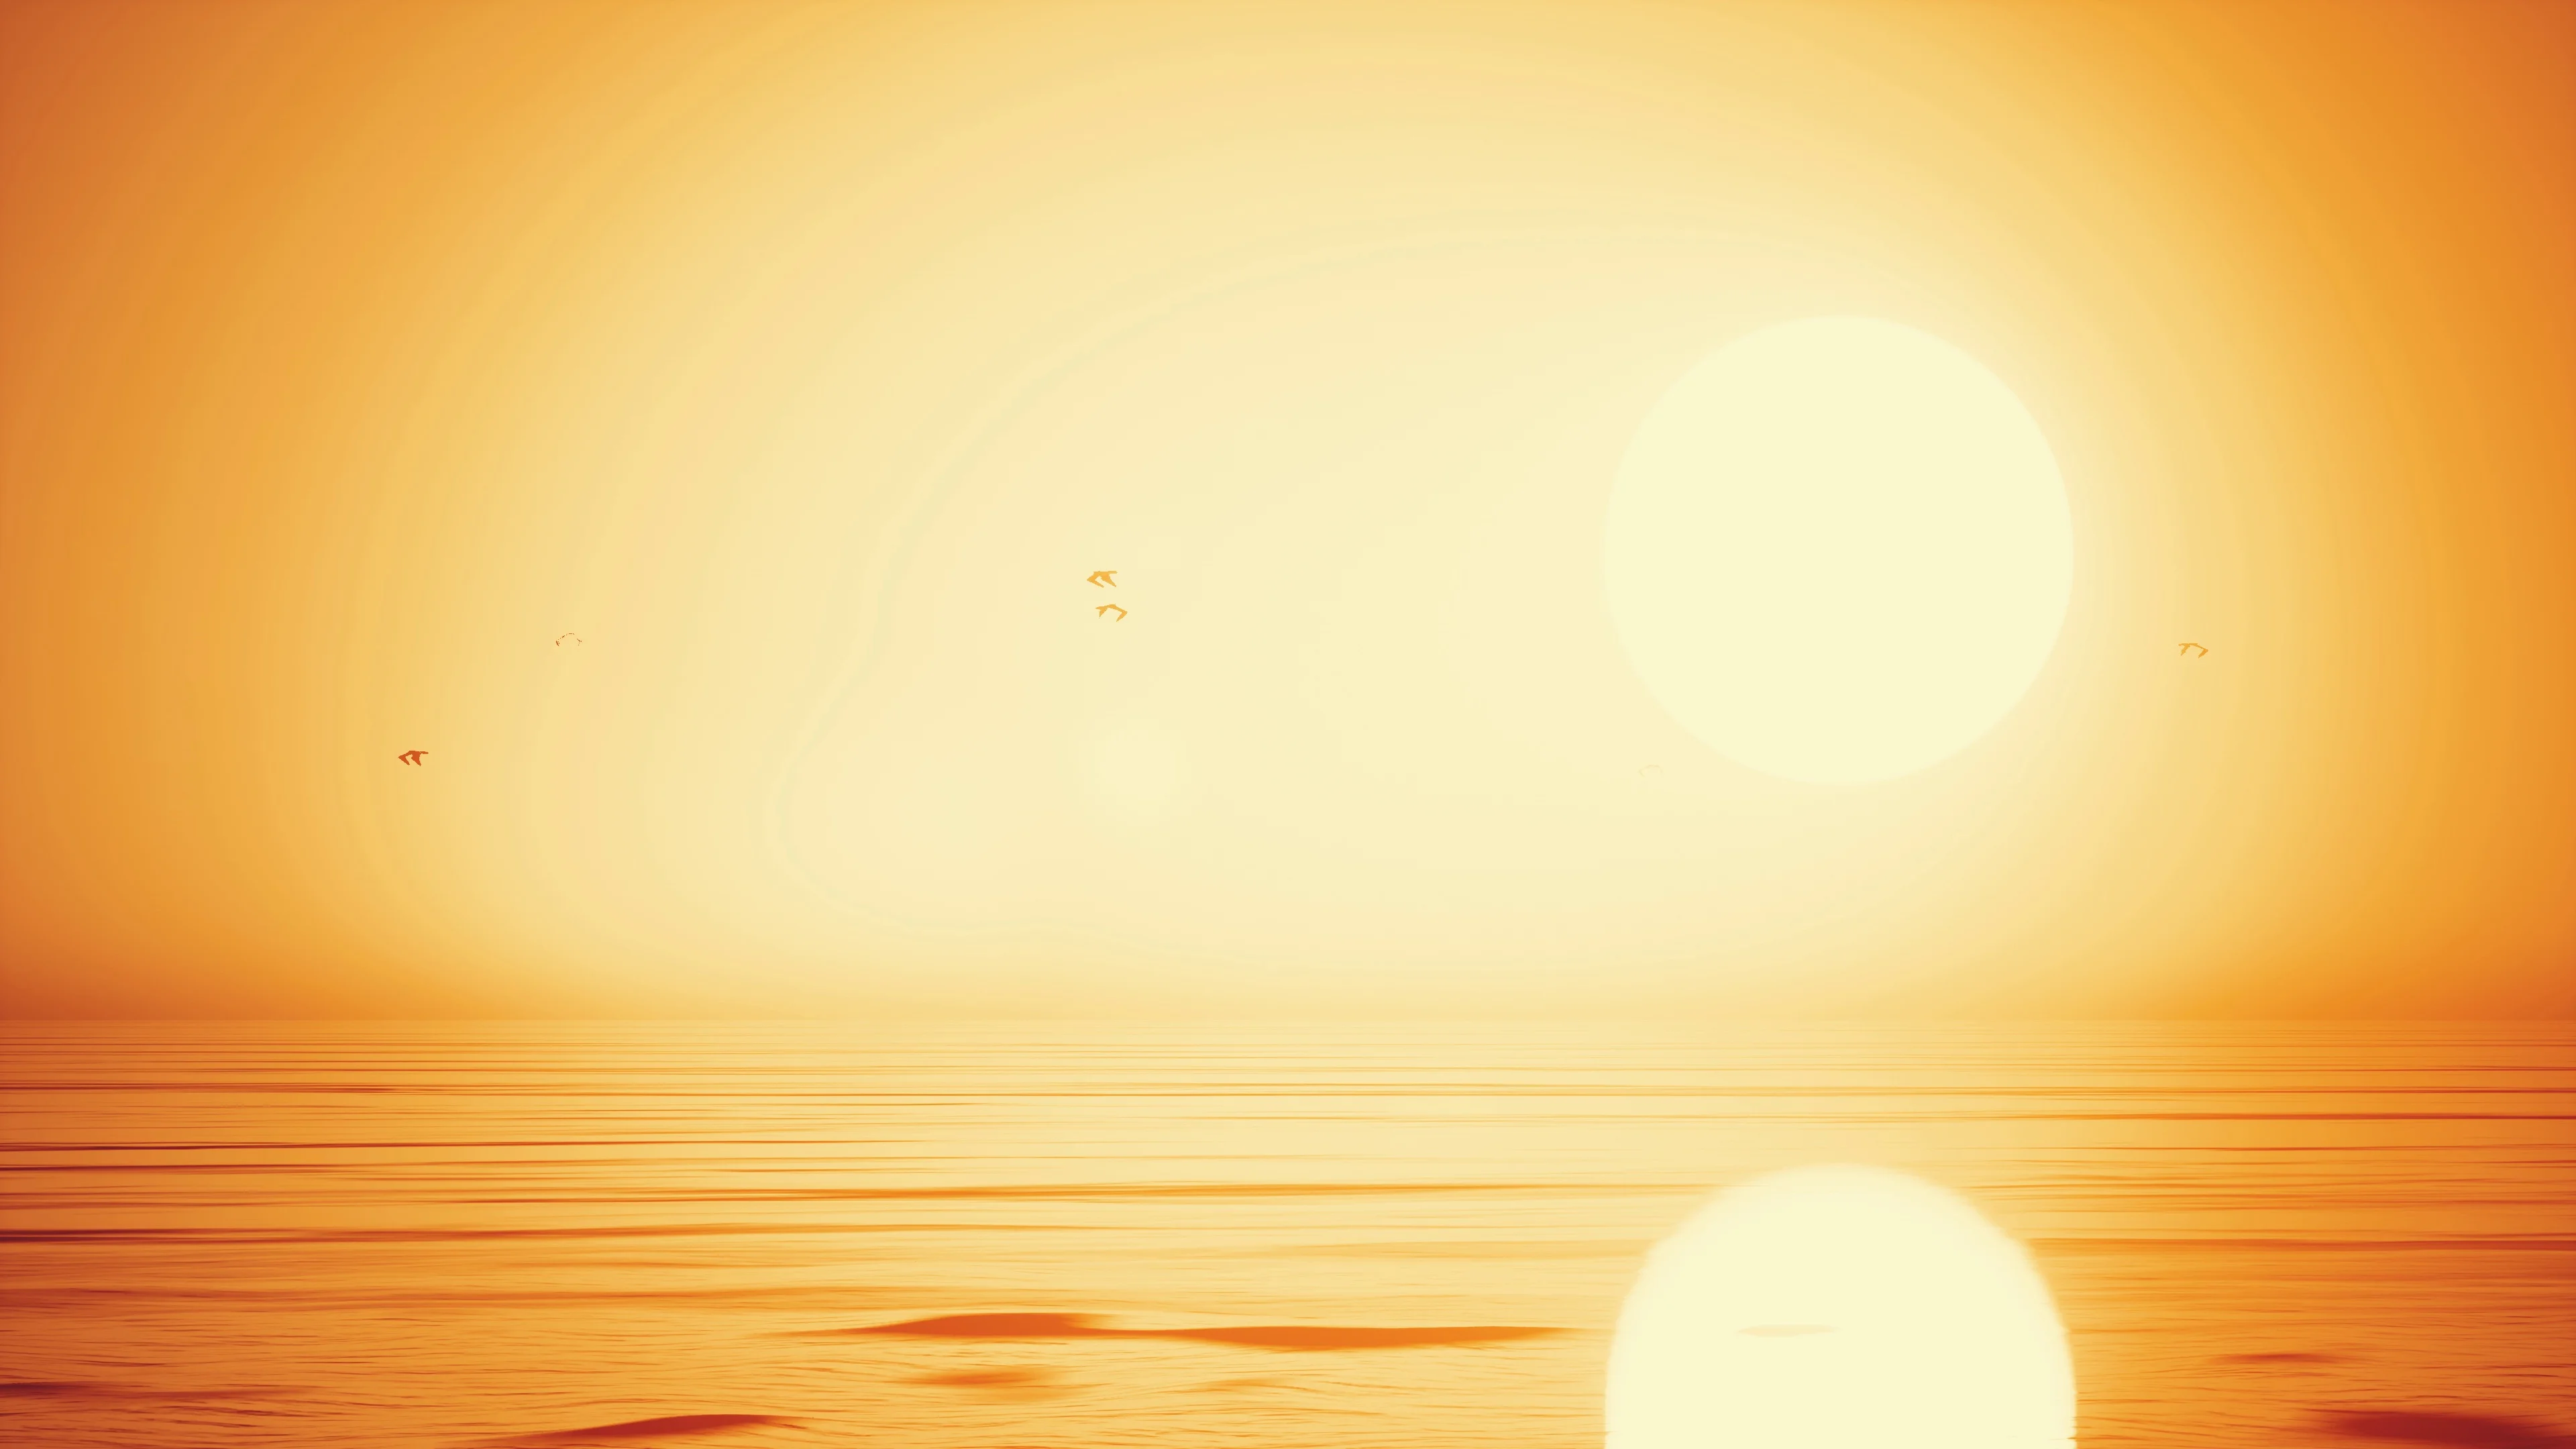 Với nền màu vàng sáng của mặt trời mọc/lặn, bạn sẽ được chứng kiến một thế giới đầy sắc màu và sống động. Nếu yêu cầu phong cách của bạn là sự độc đáo và lấp lánh thì đây chính là cảnh quan đẹp nhất để bạn thể hiện niềm đam mê đó.